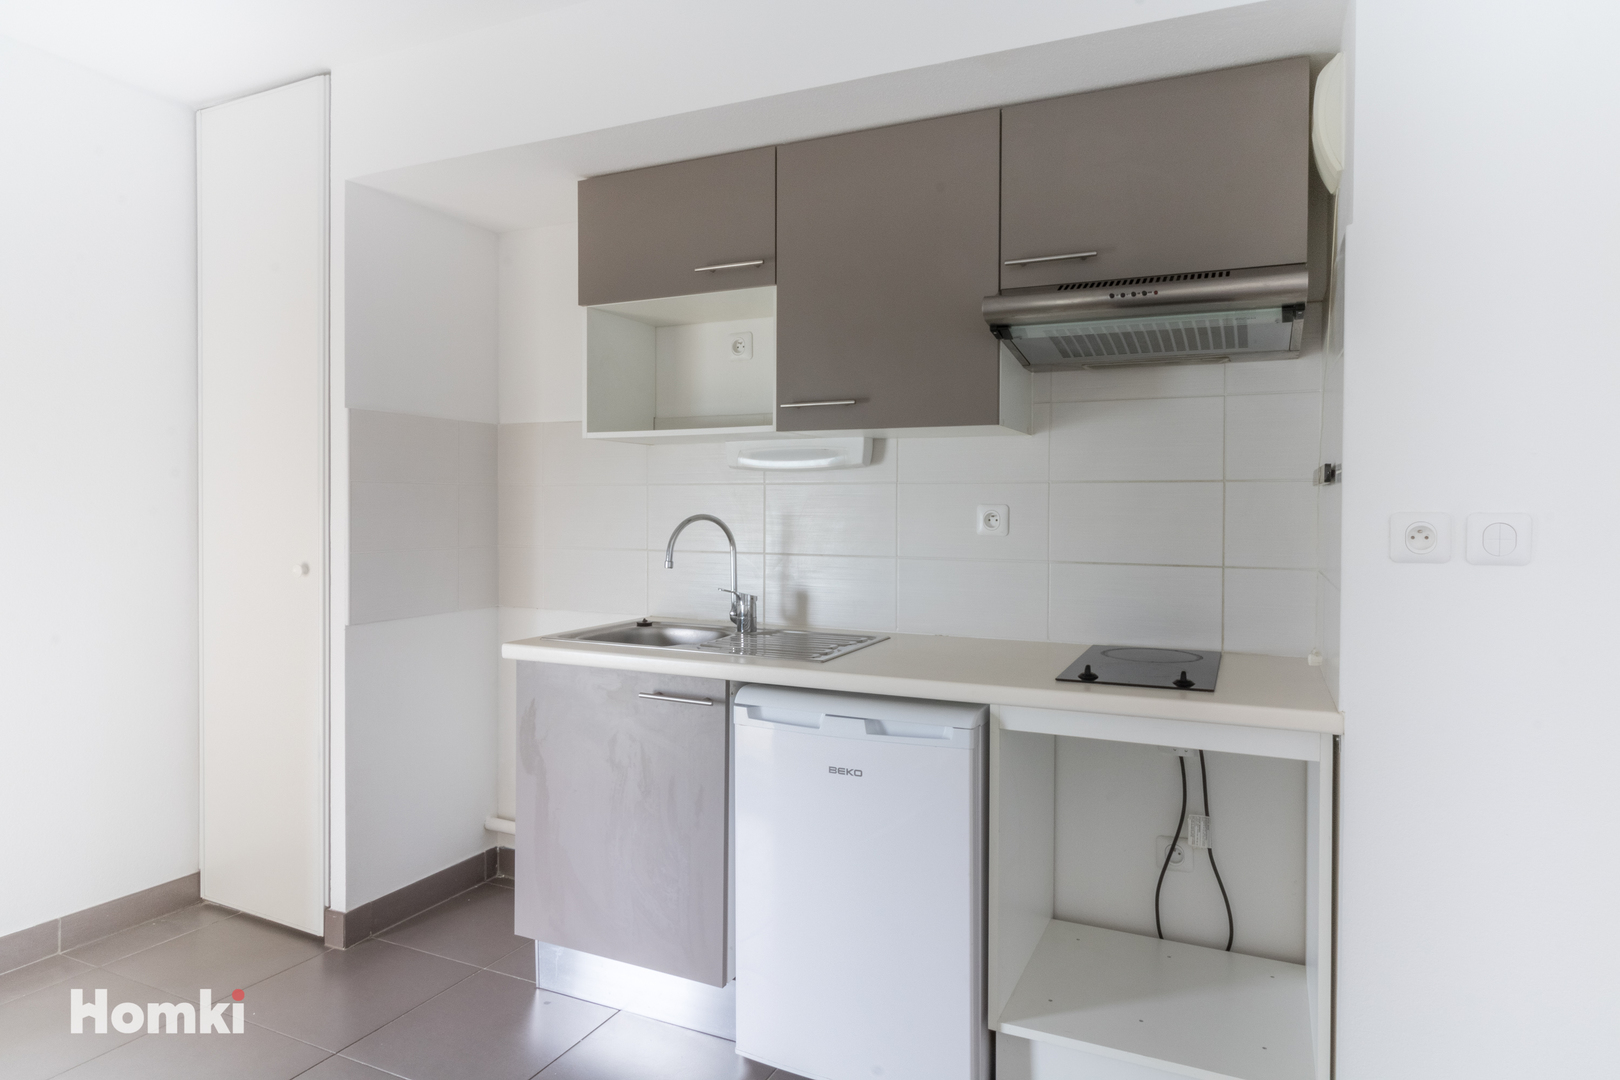 Homki - Vente Appartement  de 44.0 m² à Tournefeuille 31170